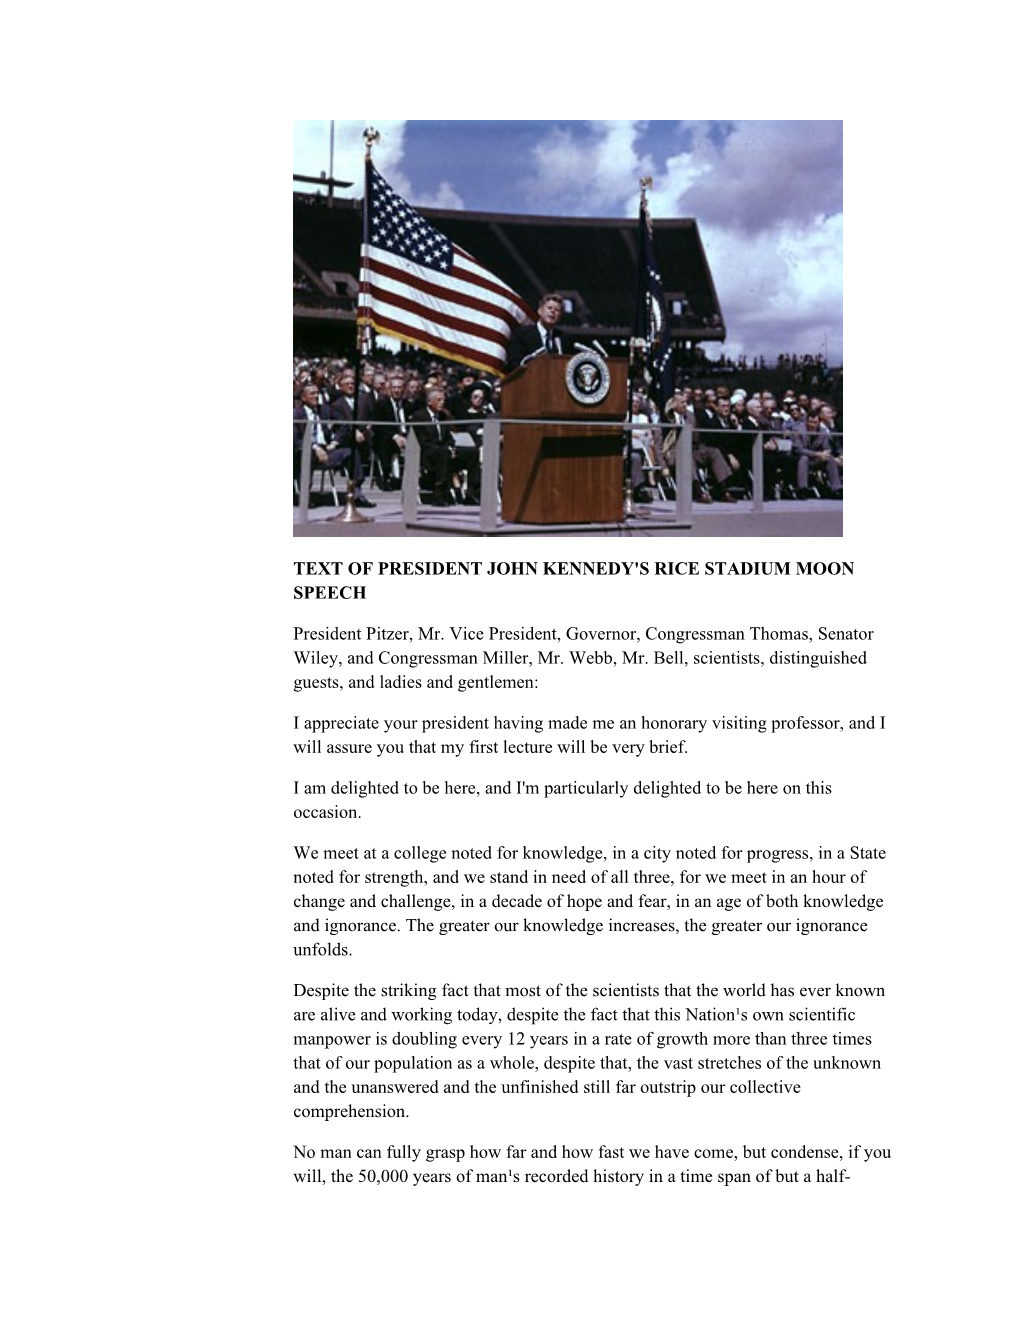 Text of President John Kennedy's Rice Stadium Moon Speech